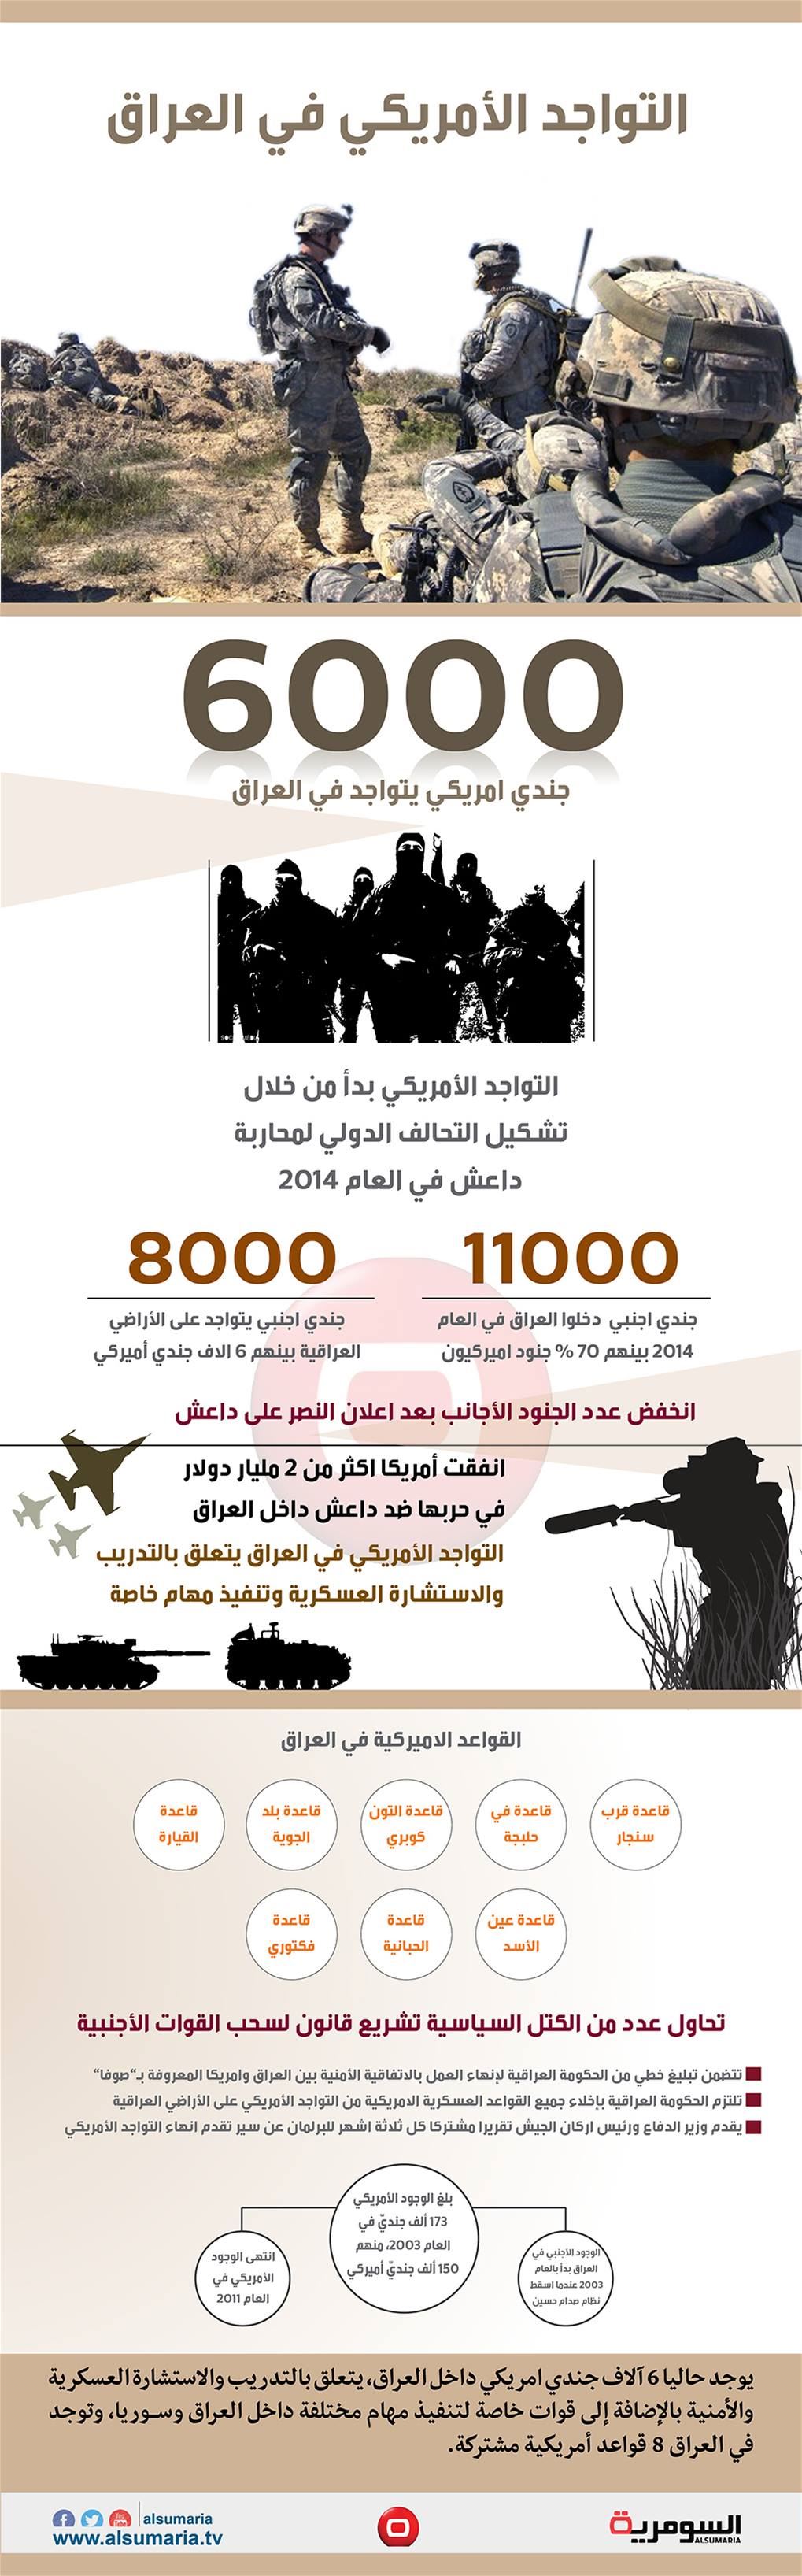 بالانفوغراف عدد القوات الامريكية في العراق